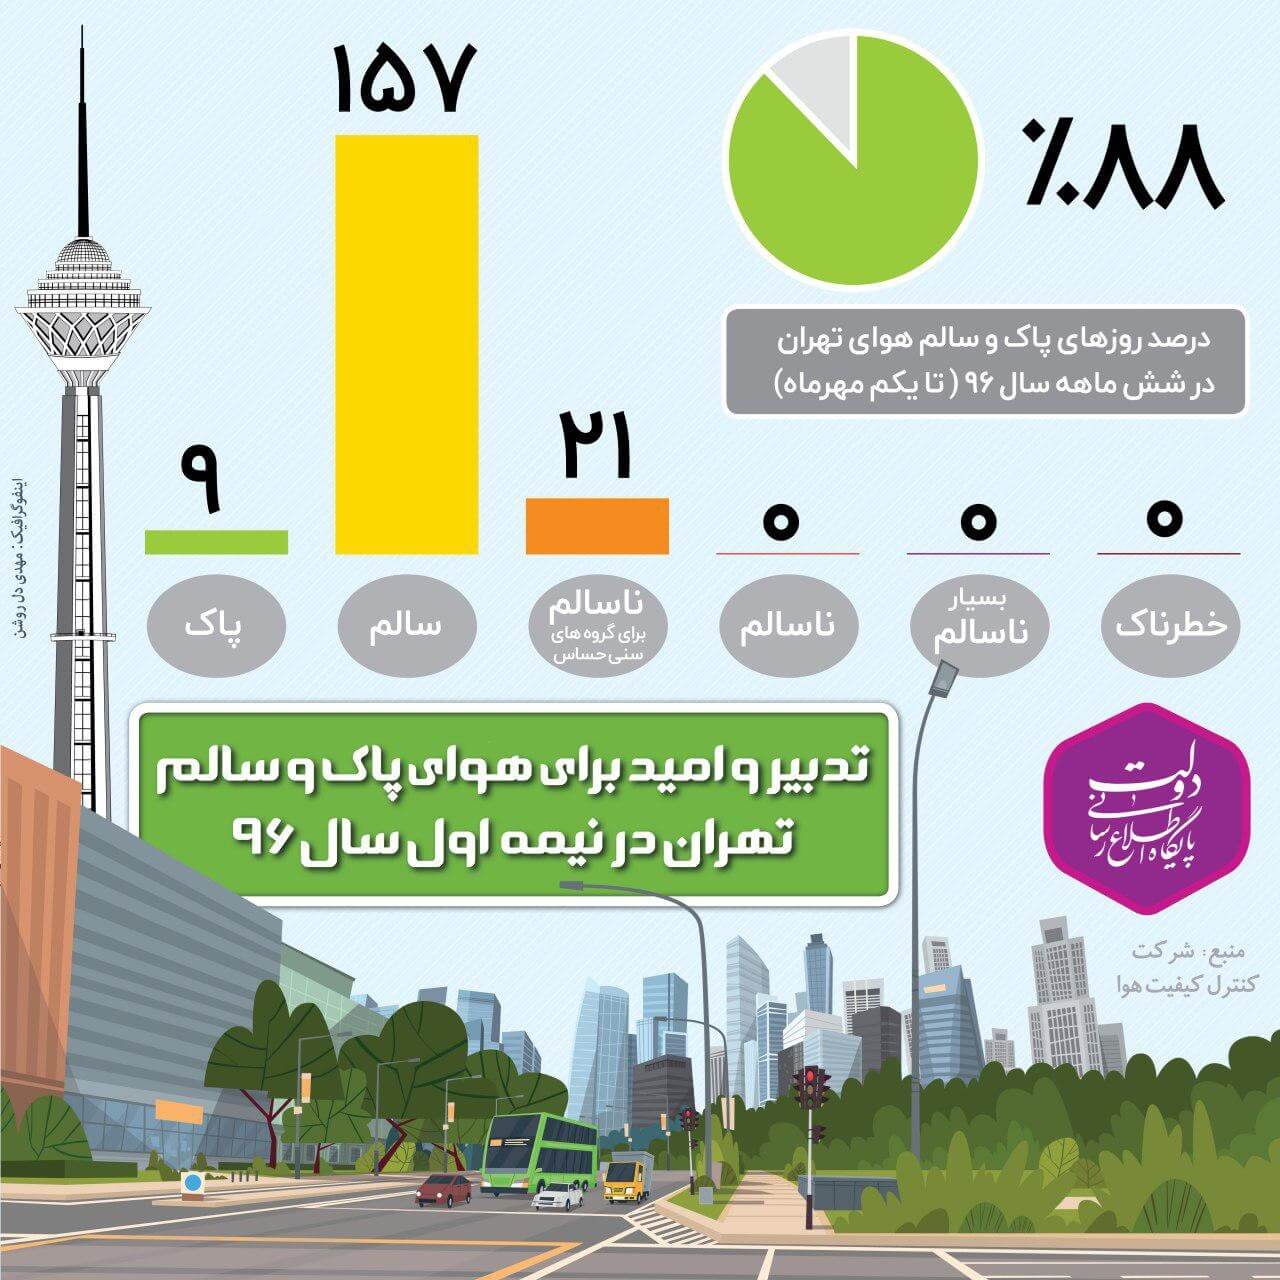 اینفوگرافیک درصد روزهای پاک و سالم هوای تهران